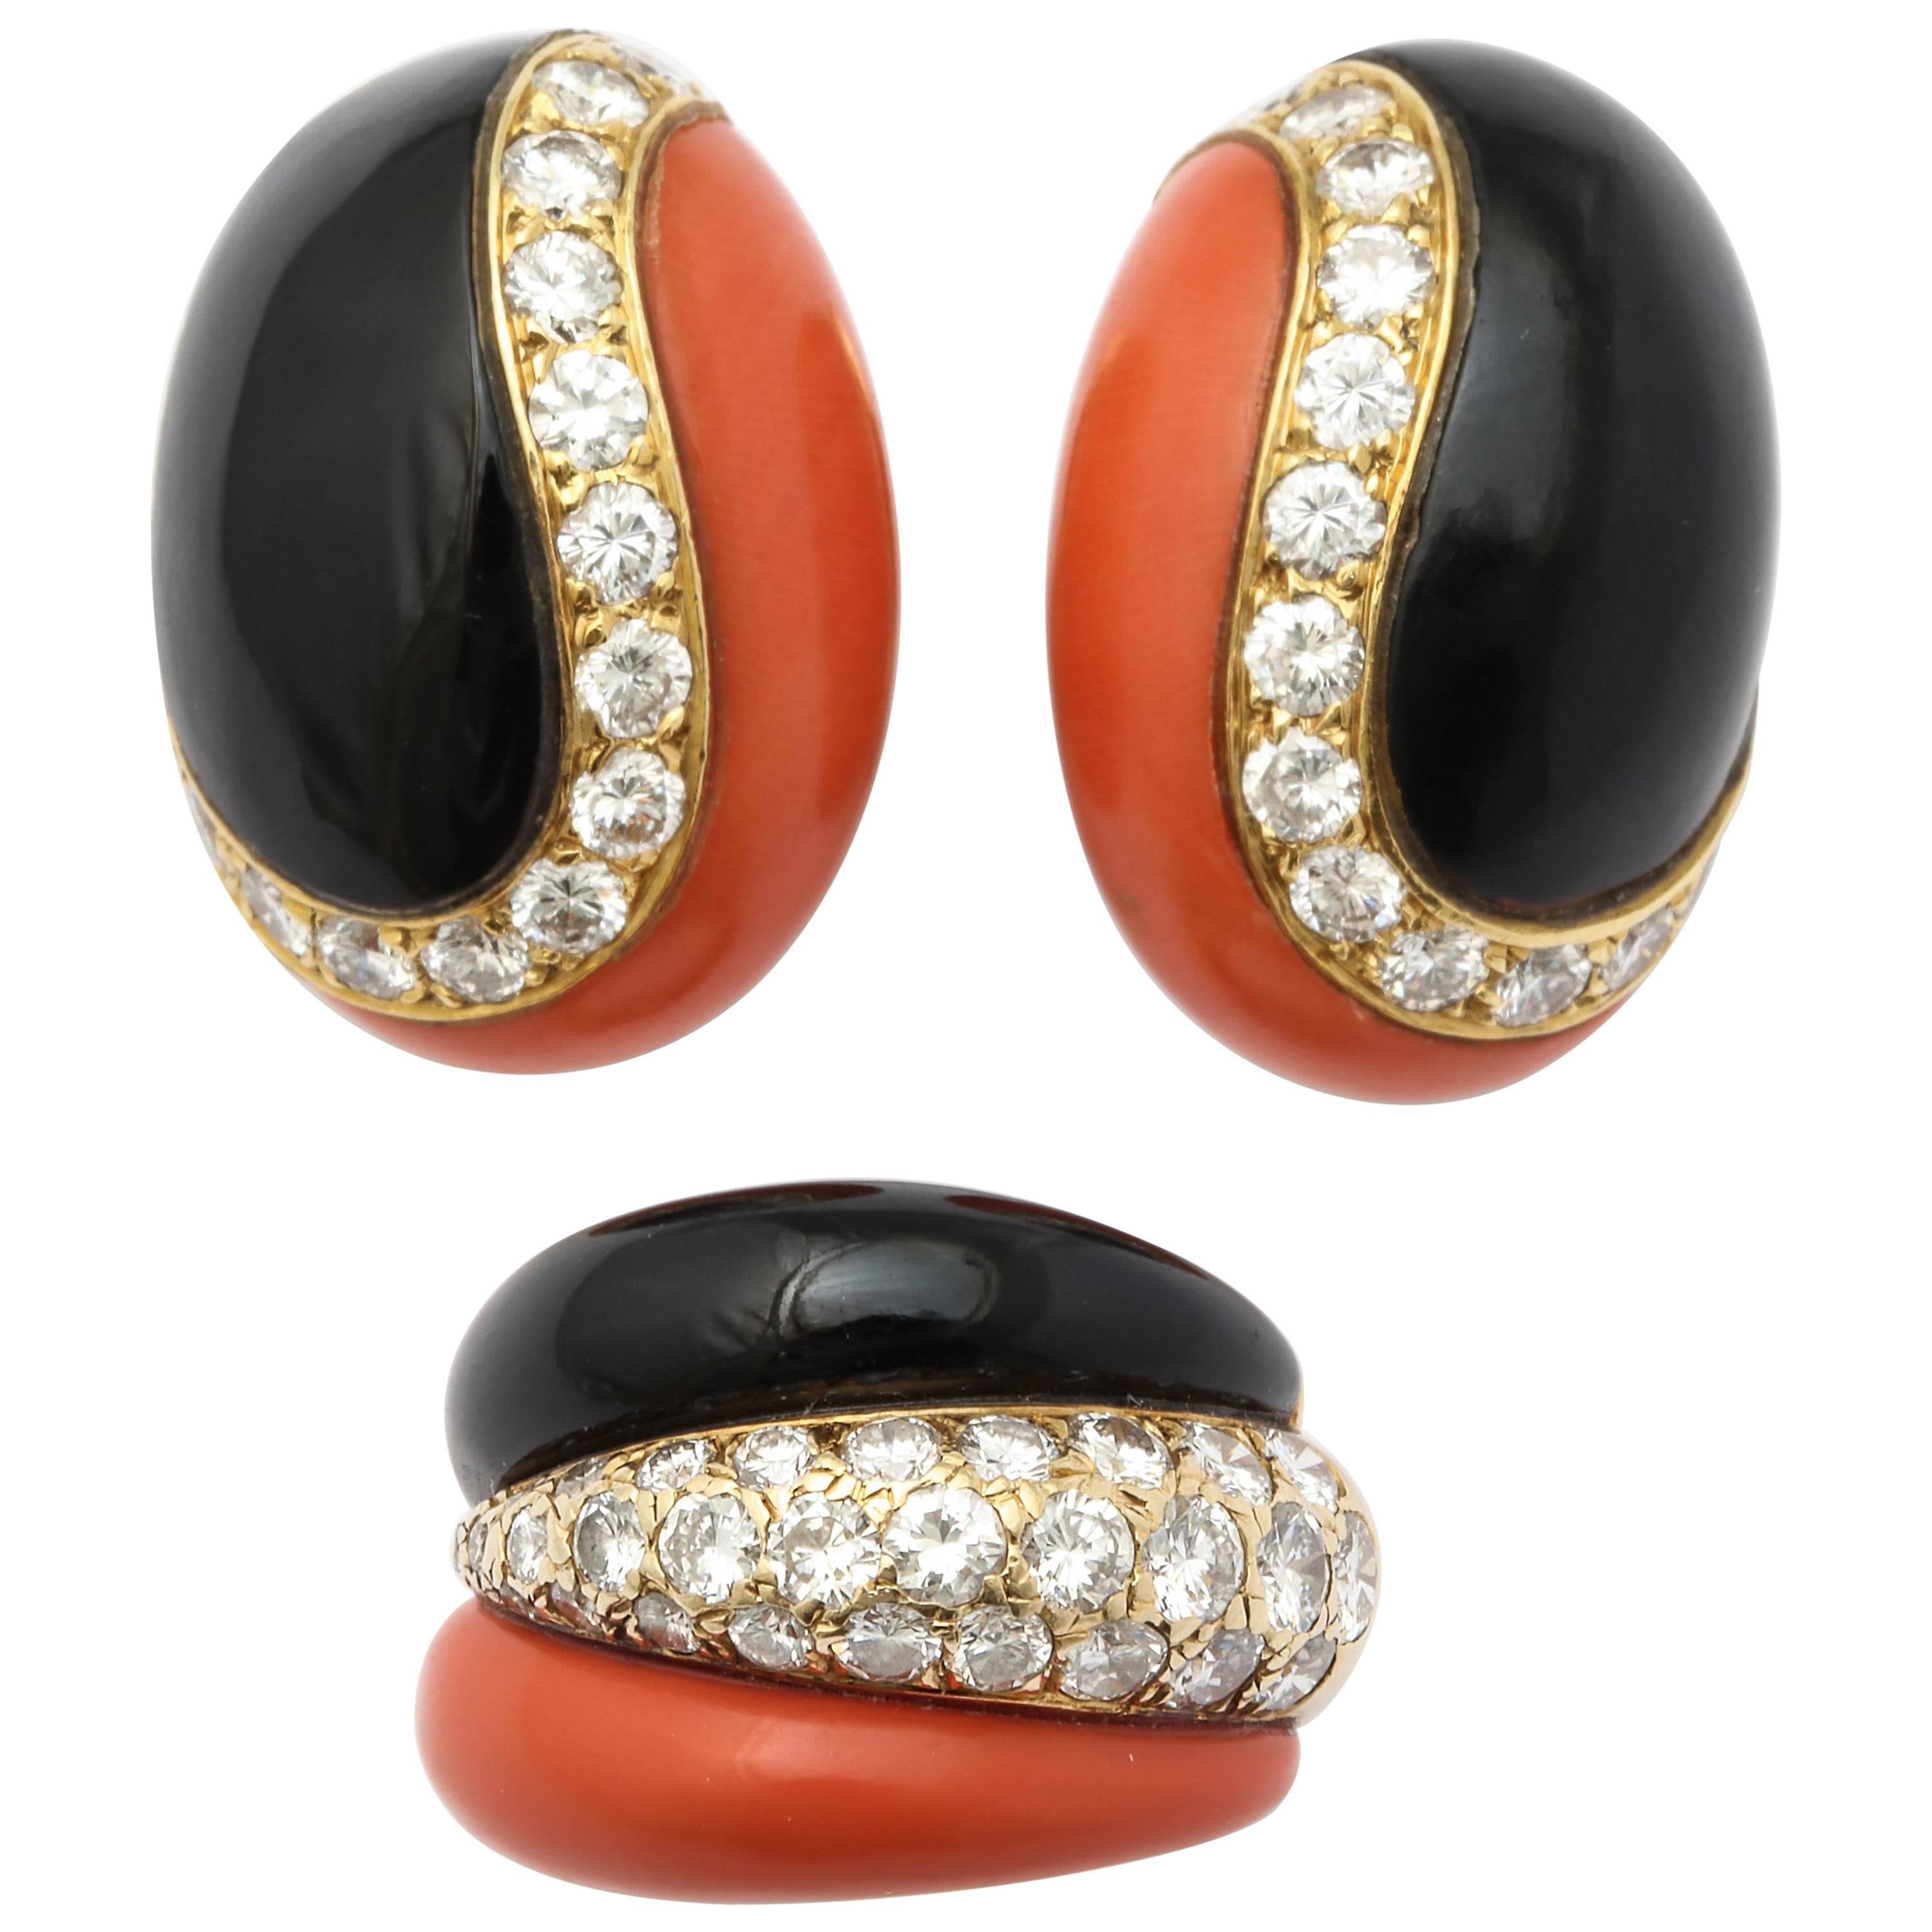 Vintage Van Cleef & Arpels Paris Coral Onyx Diamond Earrings and Ring